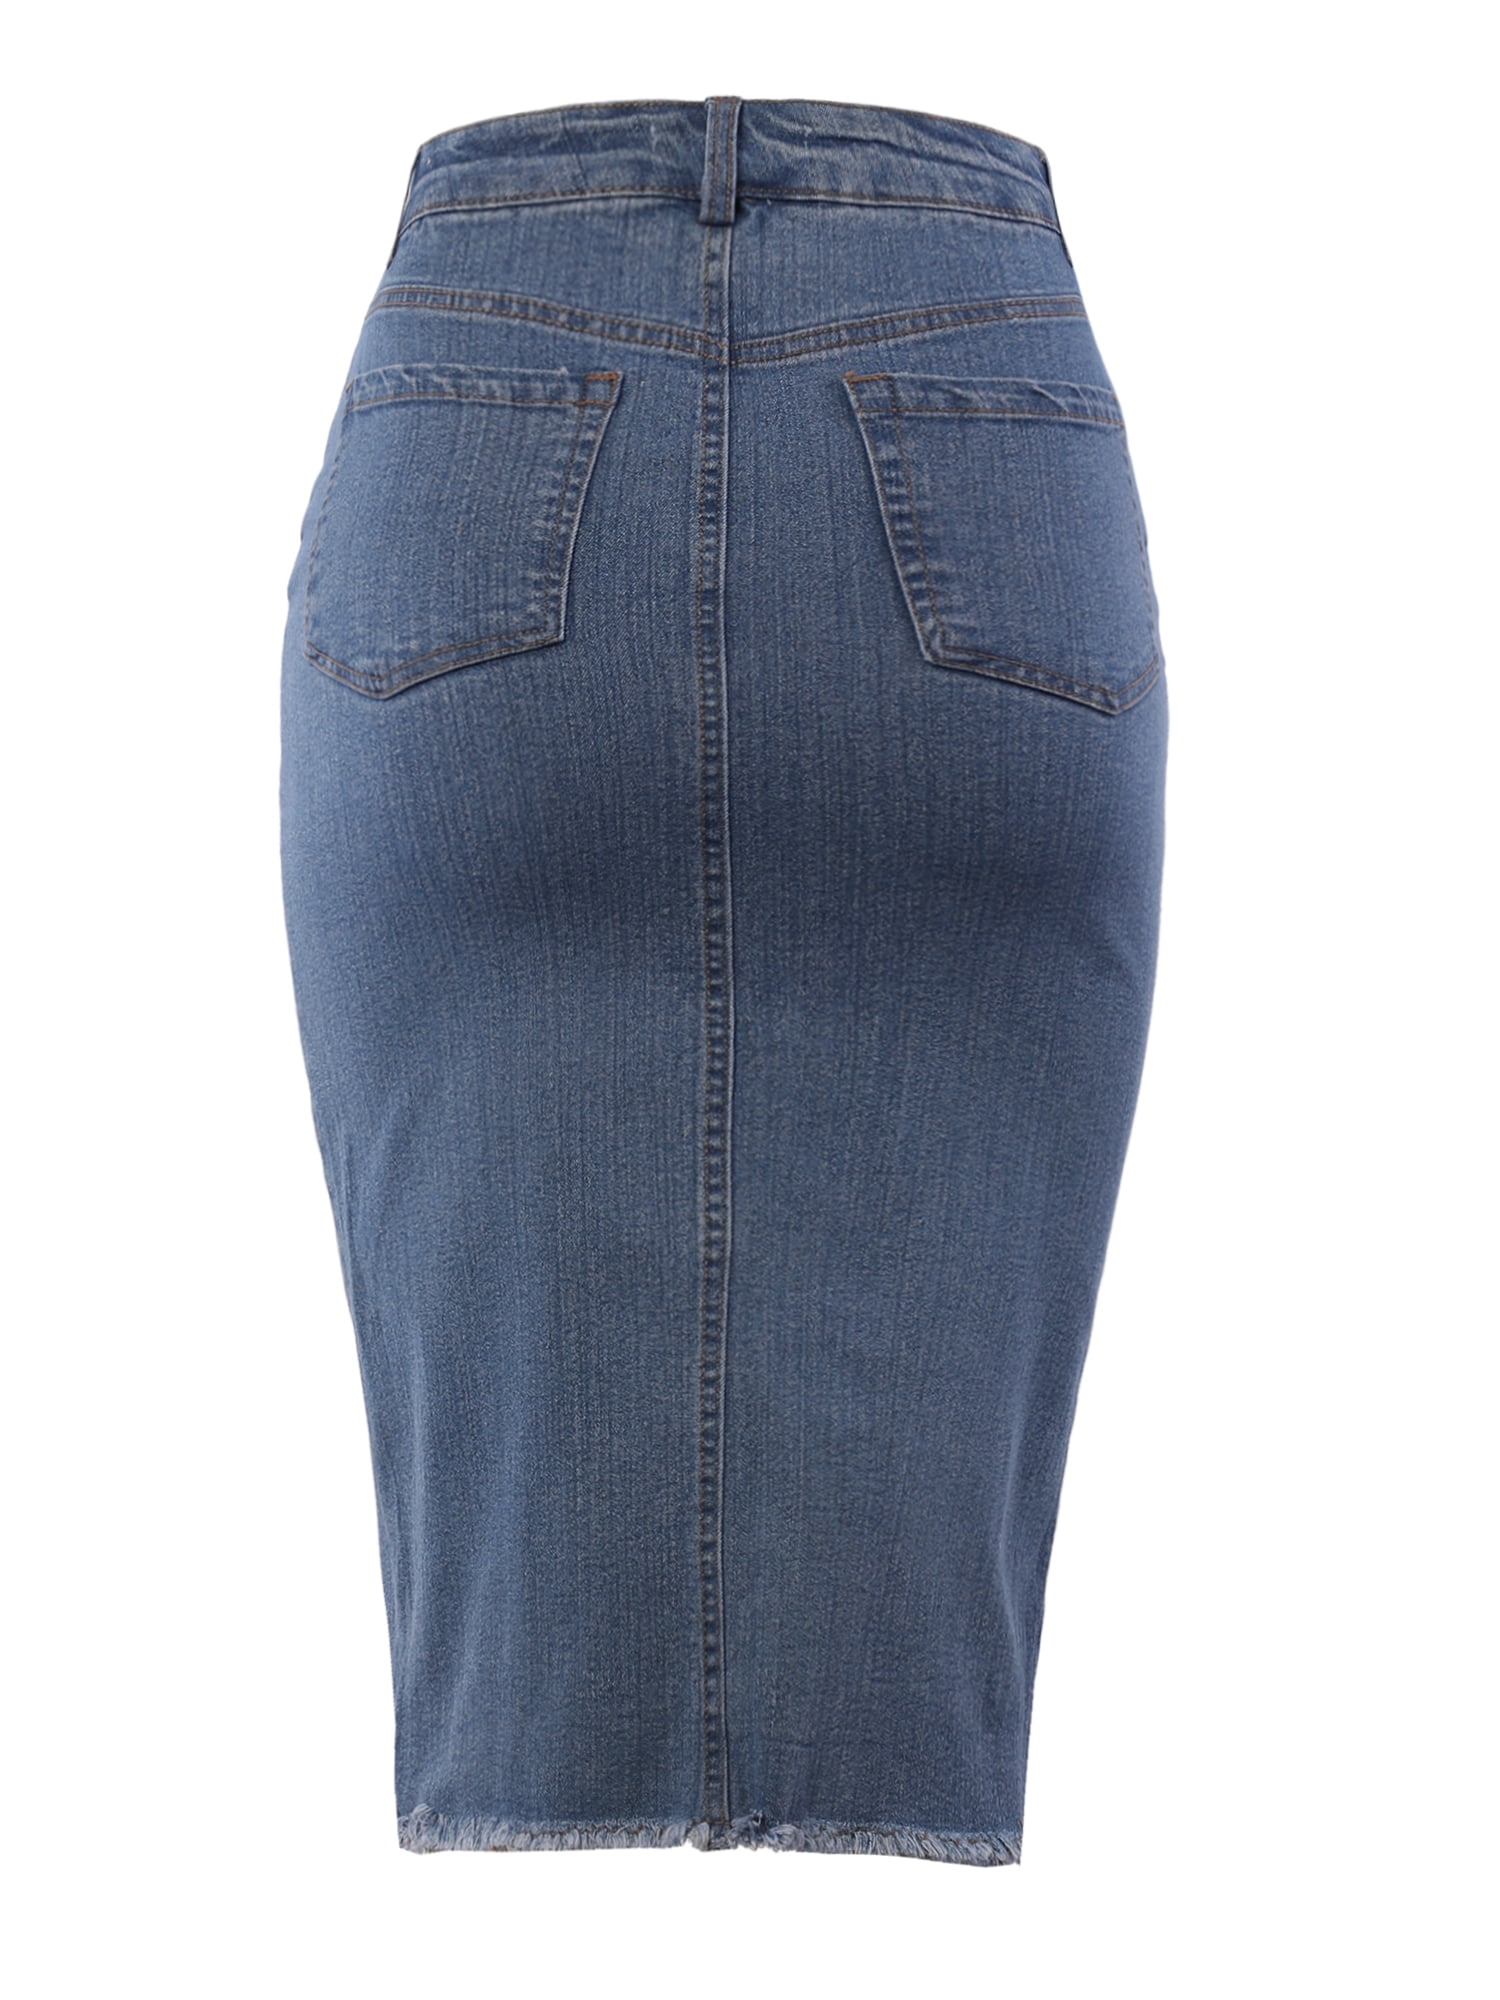 Topshop denim knee length pencil skirt in dirty gray | ASOS